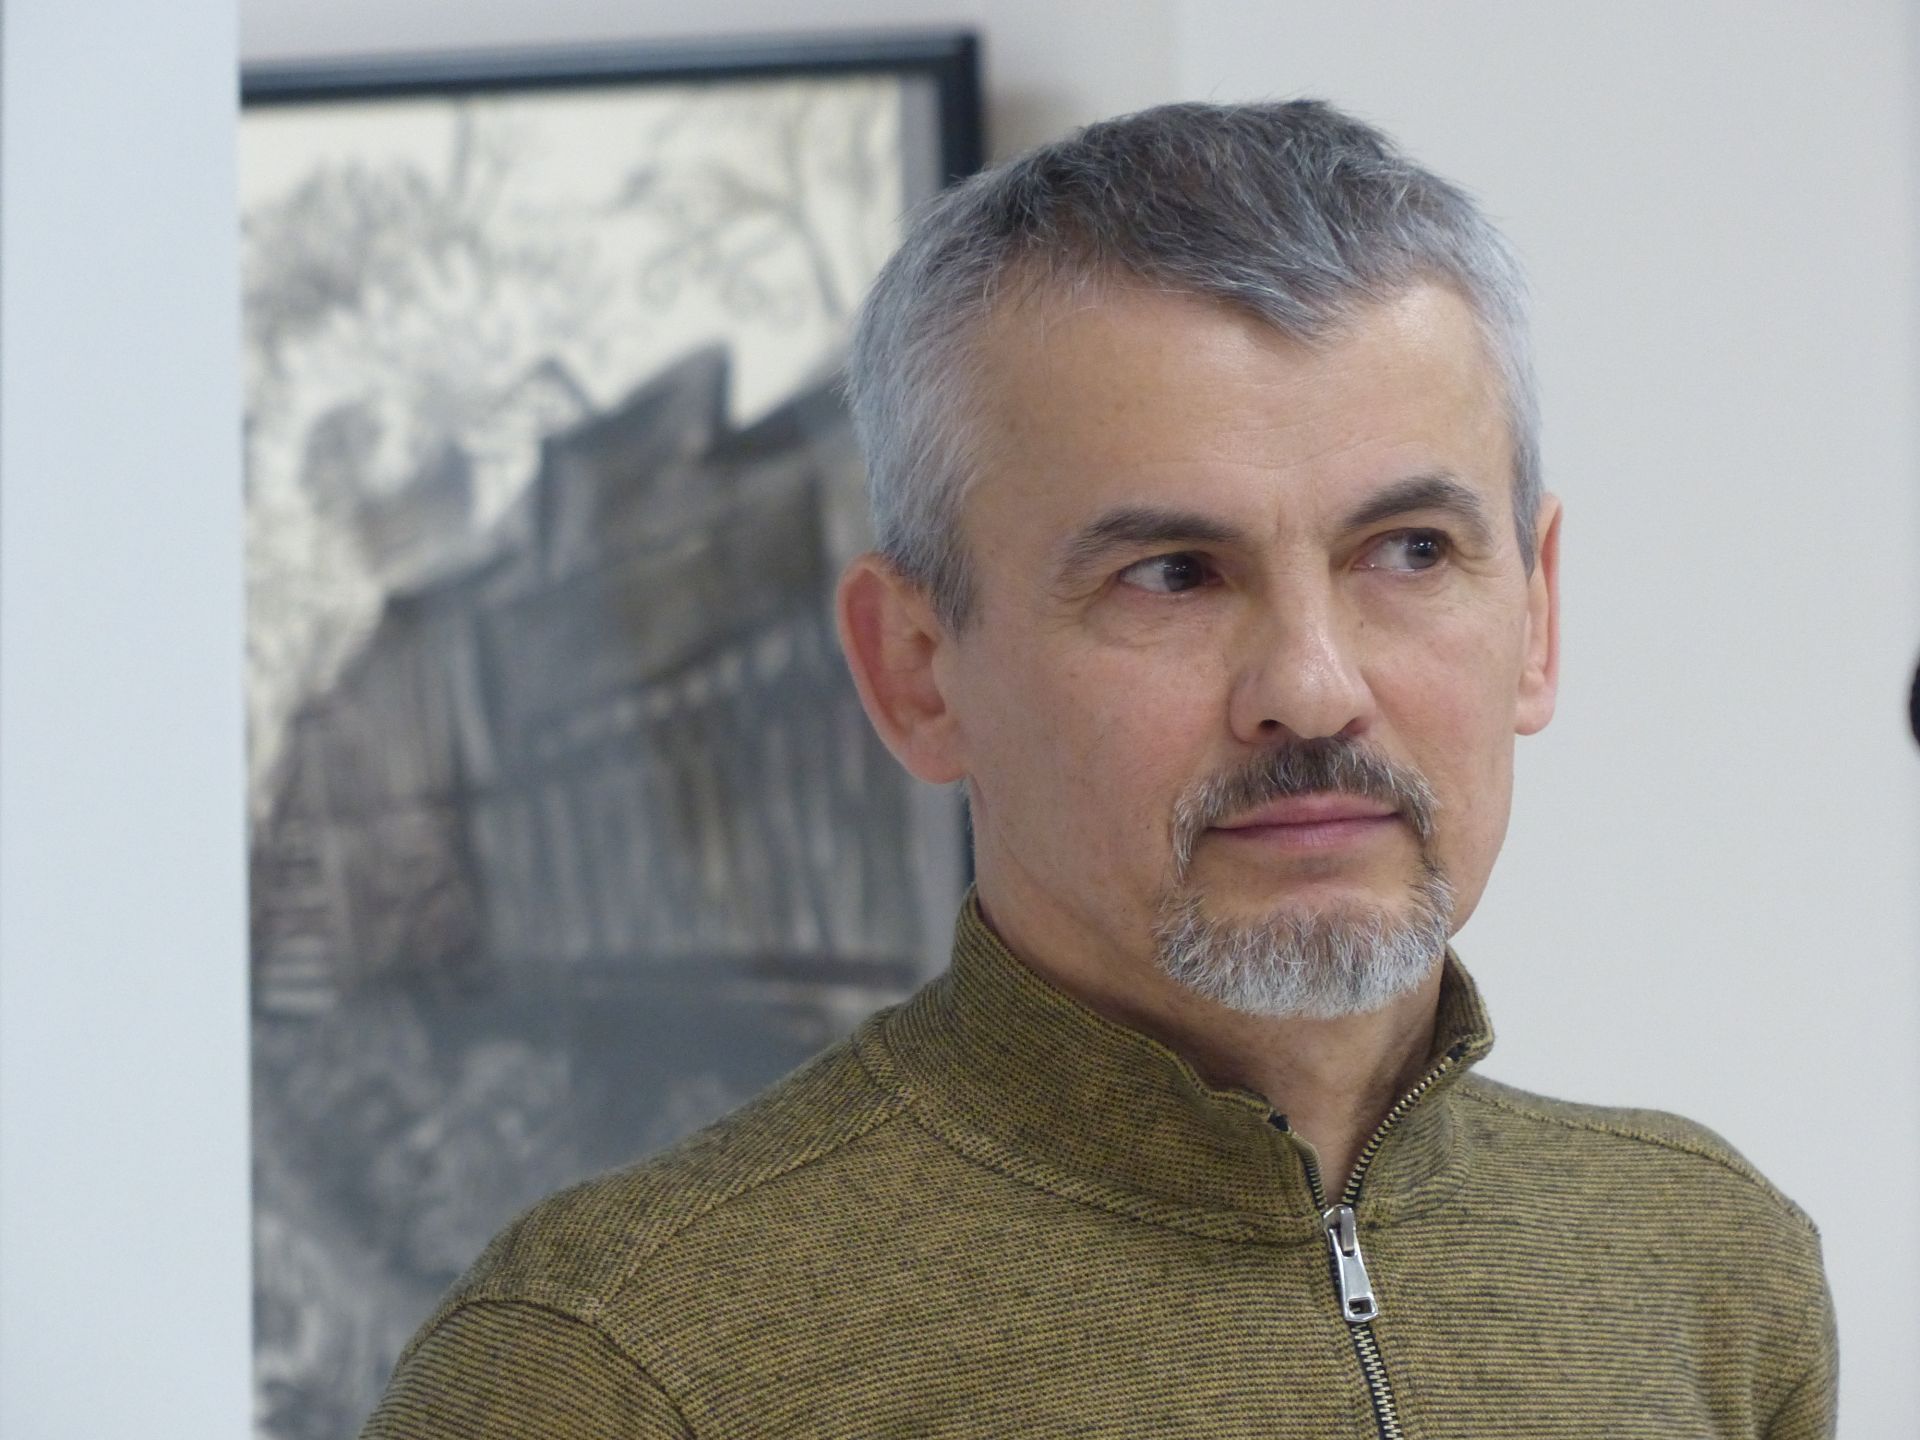 В Зеленодольской художественной галерее состоялось открытие двух выставок — художников Рушана Хисамова и Туктара Мухамадеева